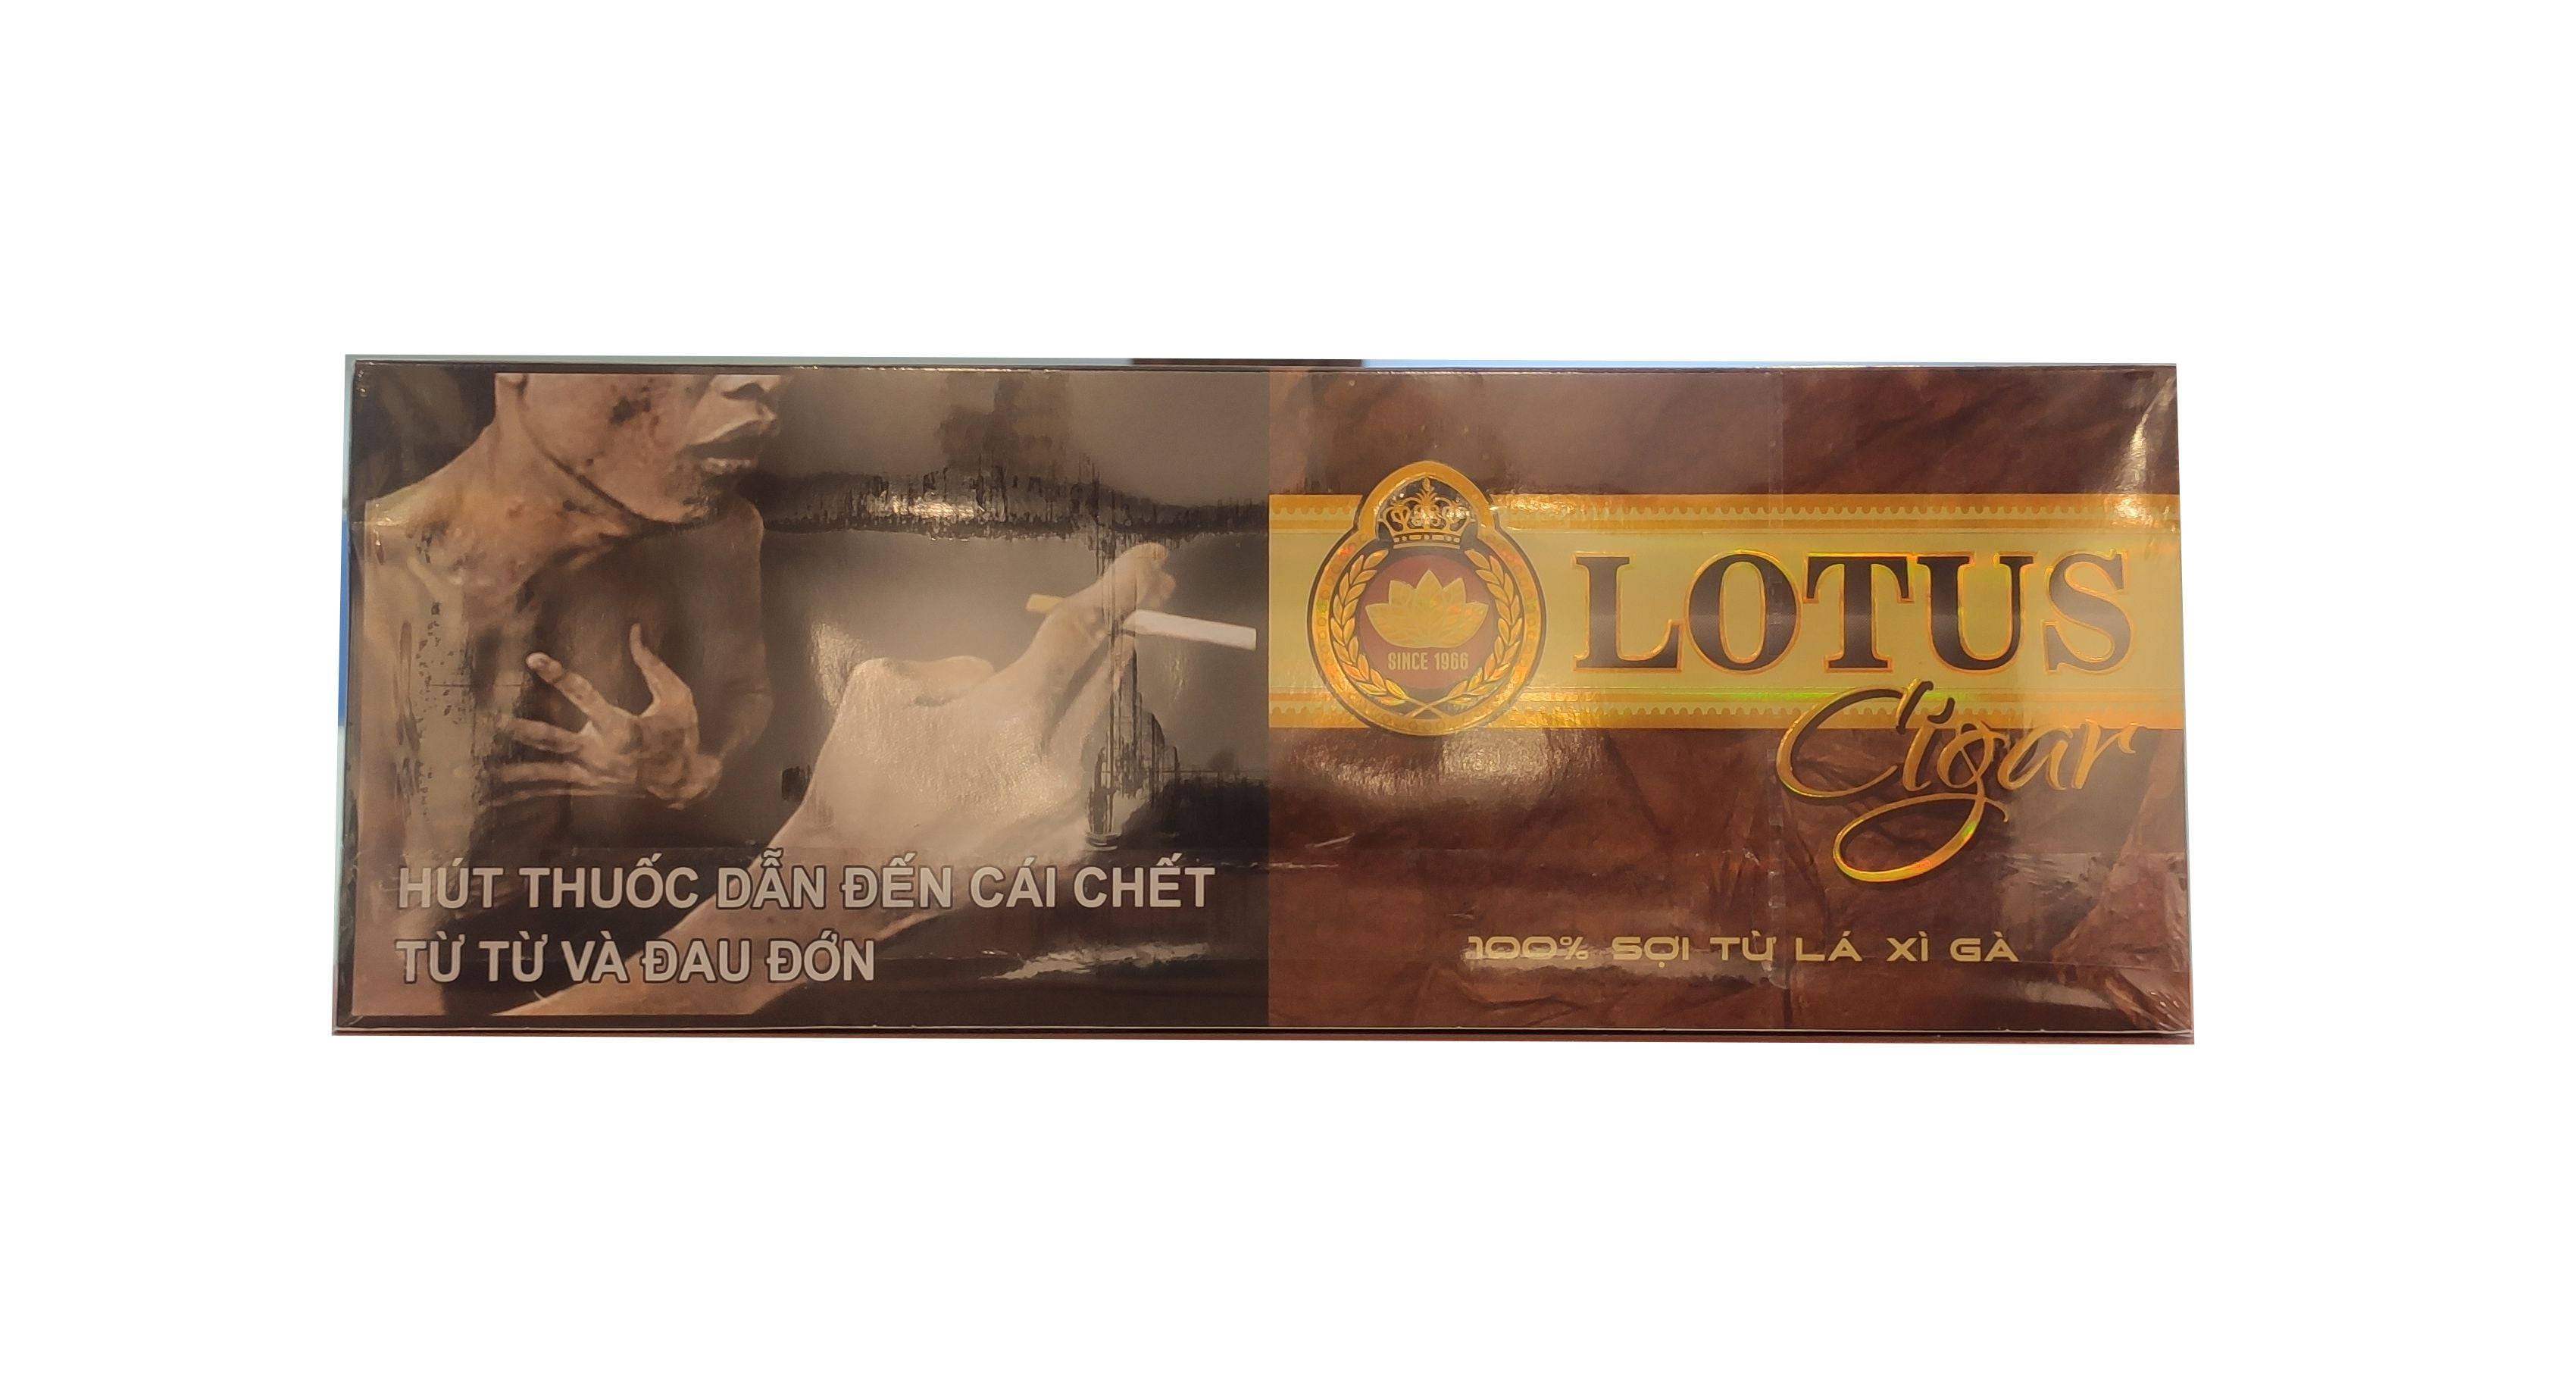 Cigar Lotus Super Slim